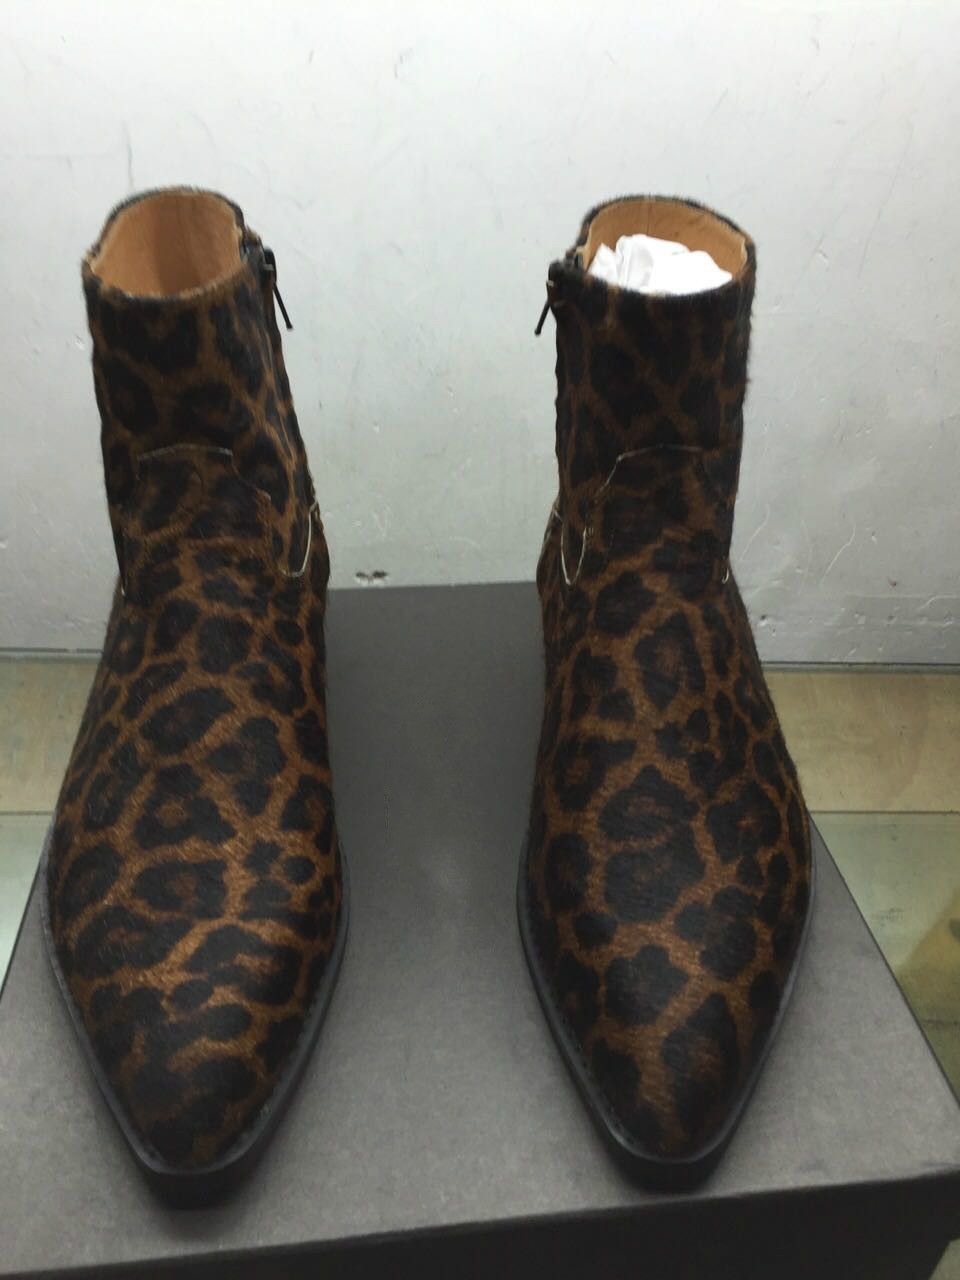 men's leopard chelsea boots